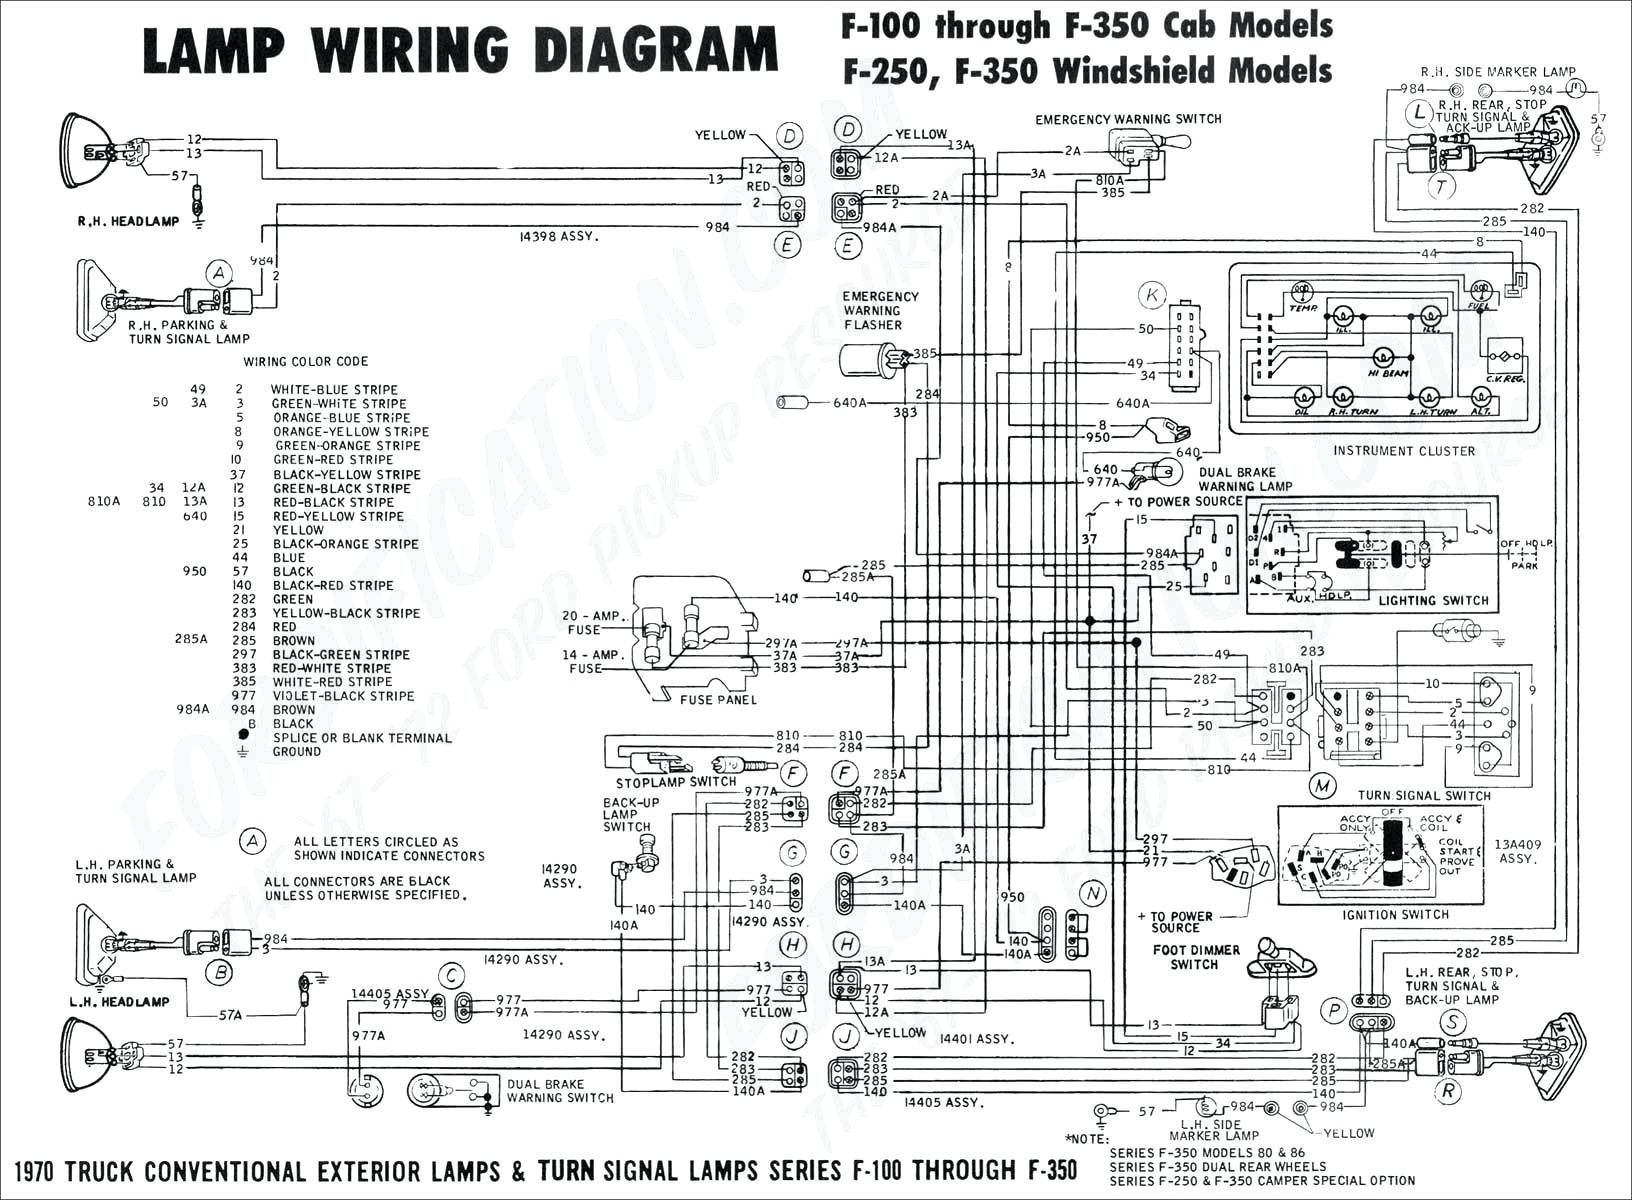 Alternator Voltage Regulator Wiring Diagram Simplified Shapes Wiring Diagram Voltage Regulator New Automobile Alternator Wiring